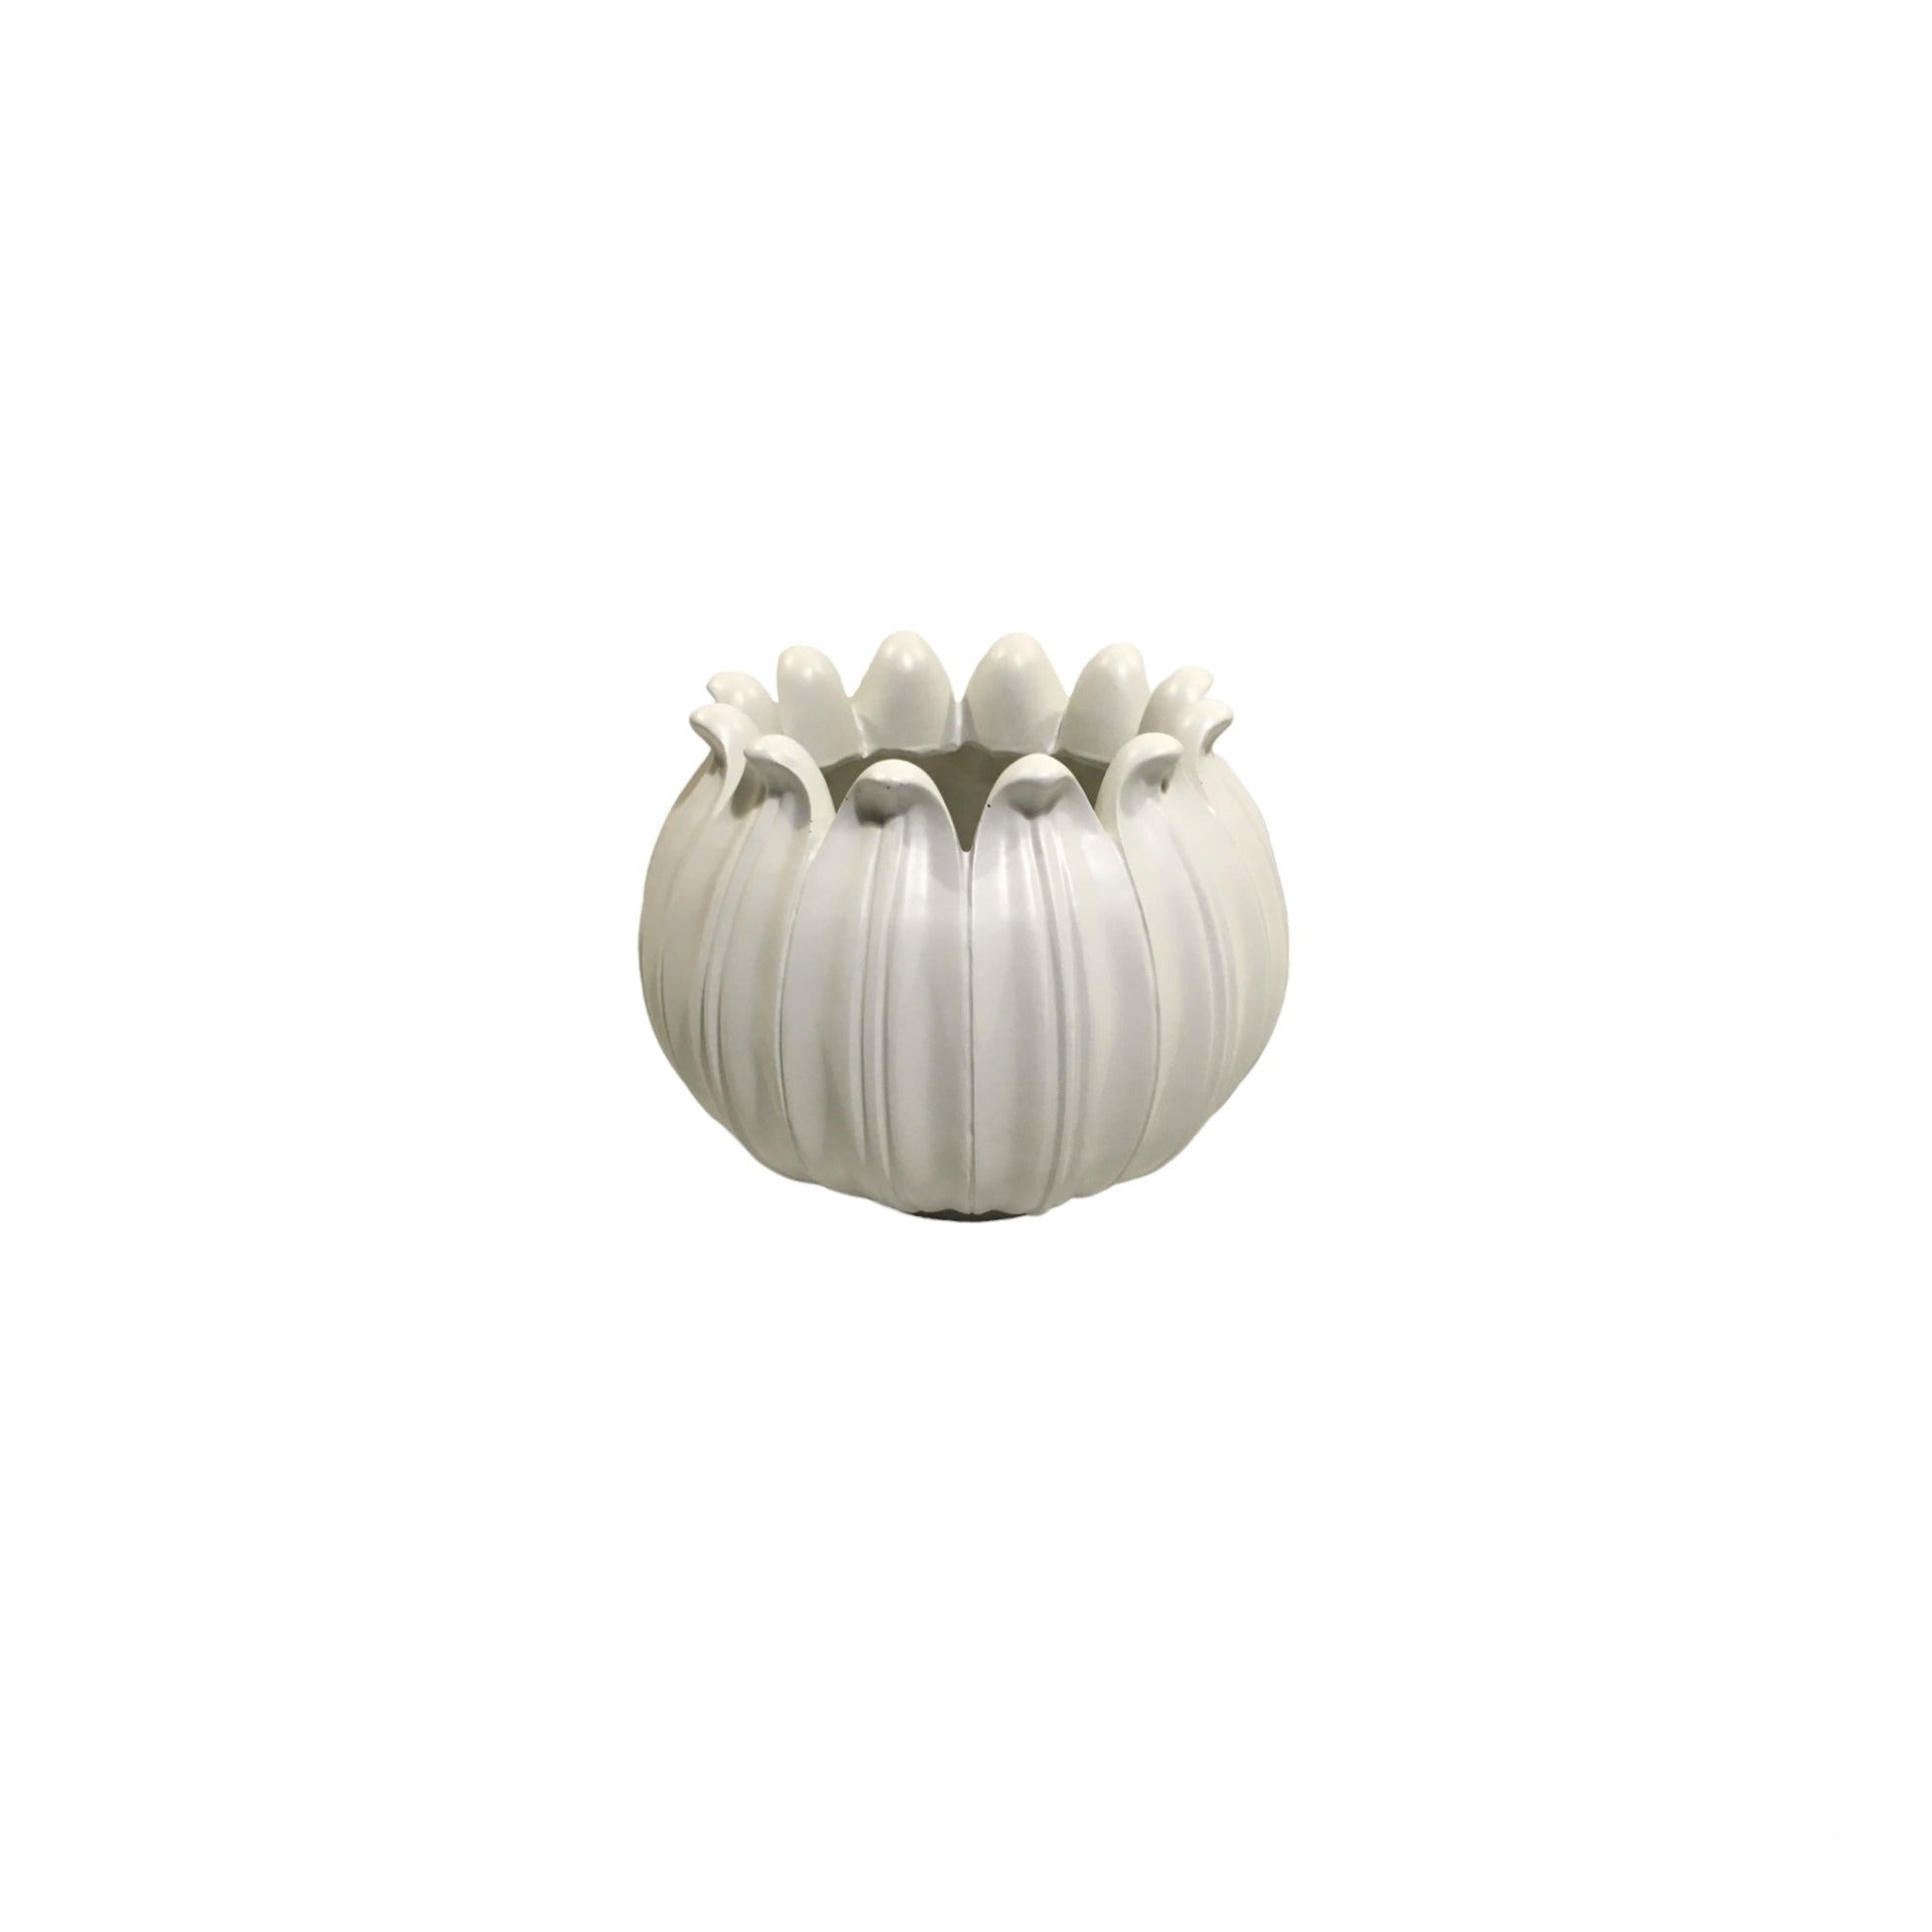 Vaso realizzato in resina bianca. Dimensioni: cm  22,5 ø x16,5 h. In negozio e online su tuttochic.it